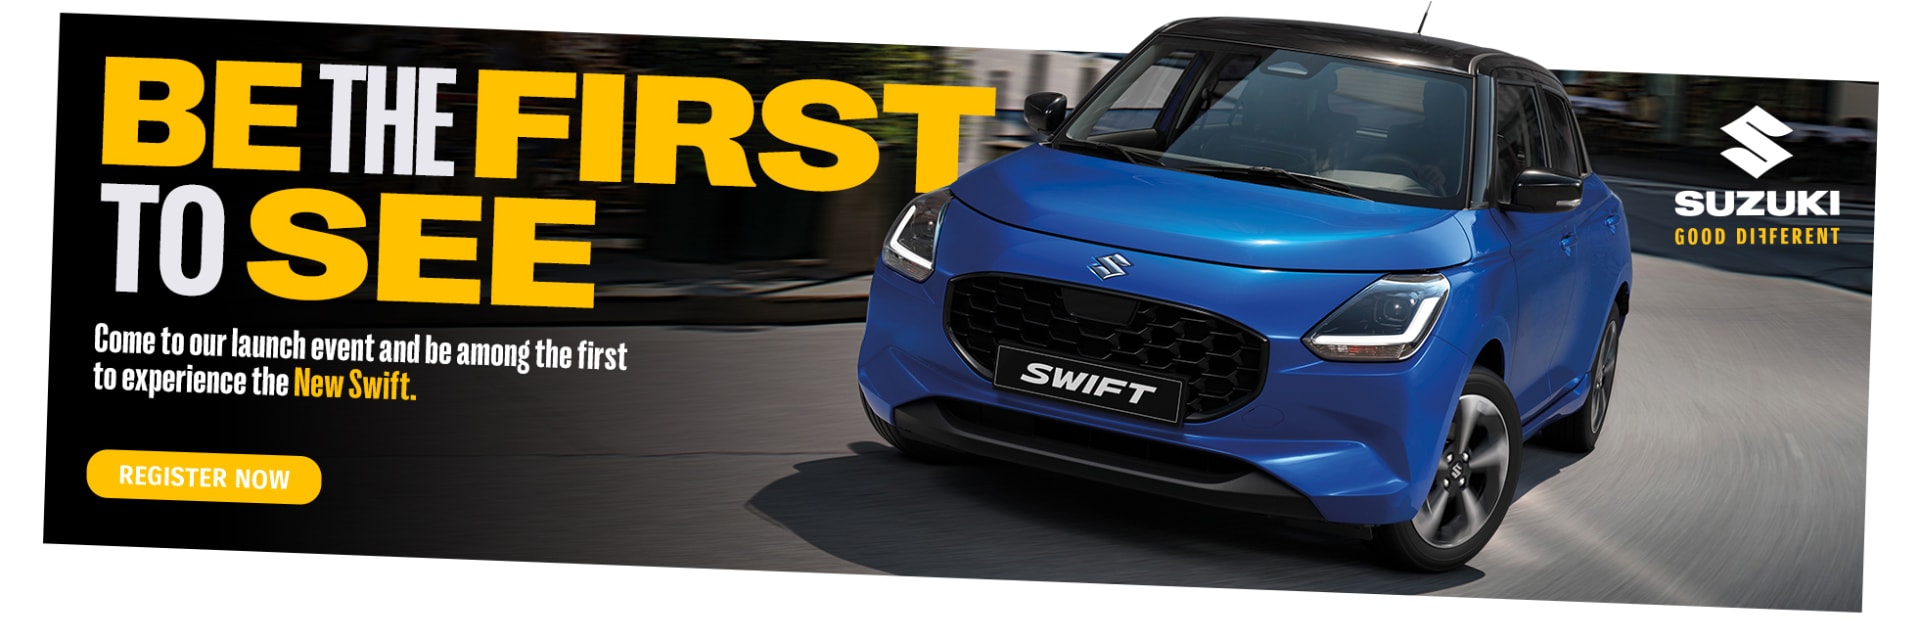 New Suzuki Swift Launch